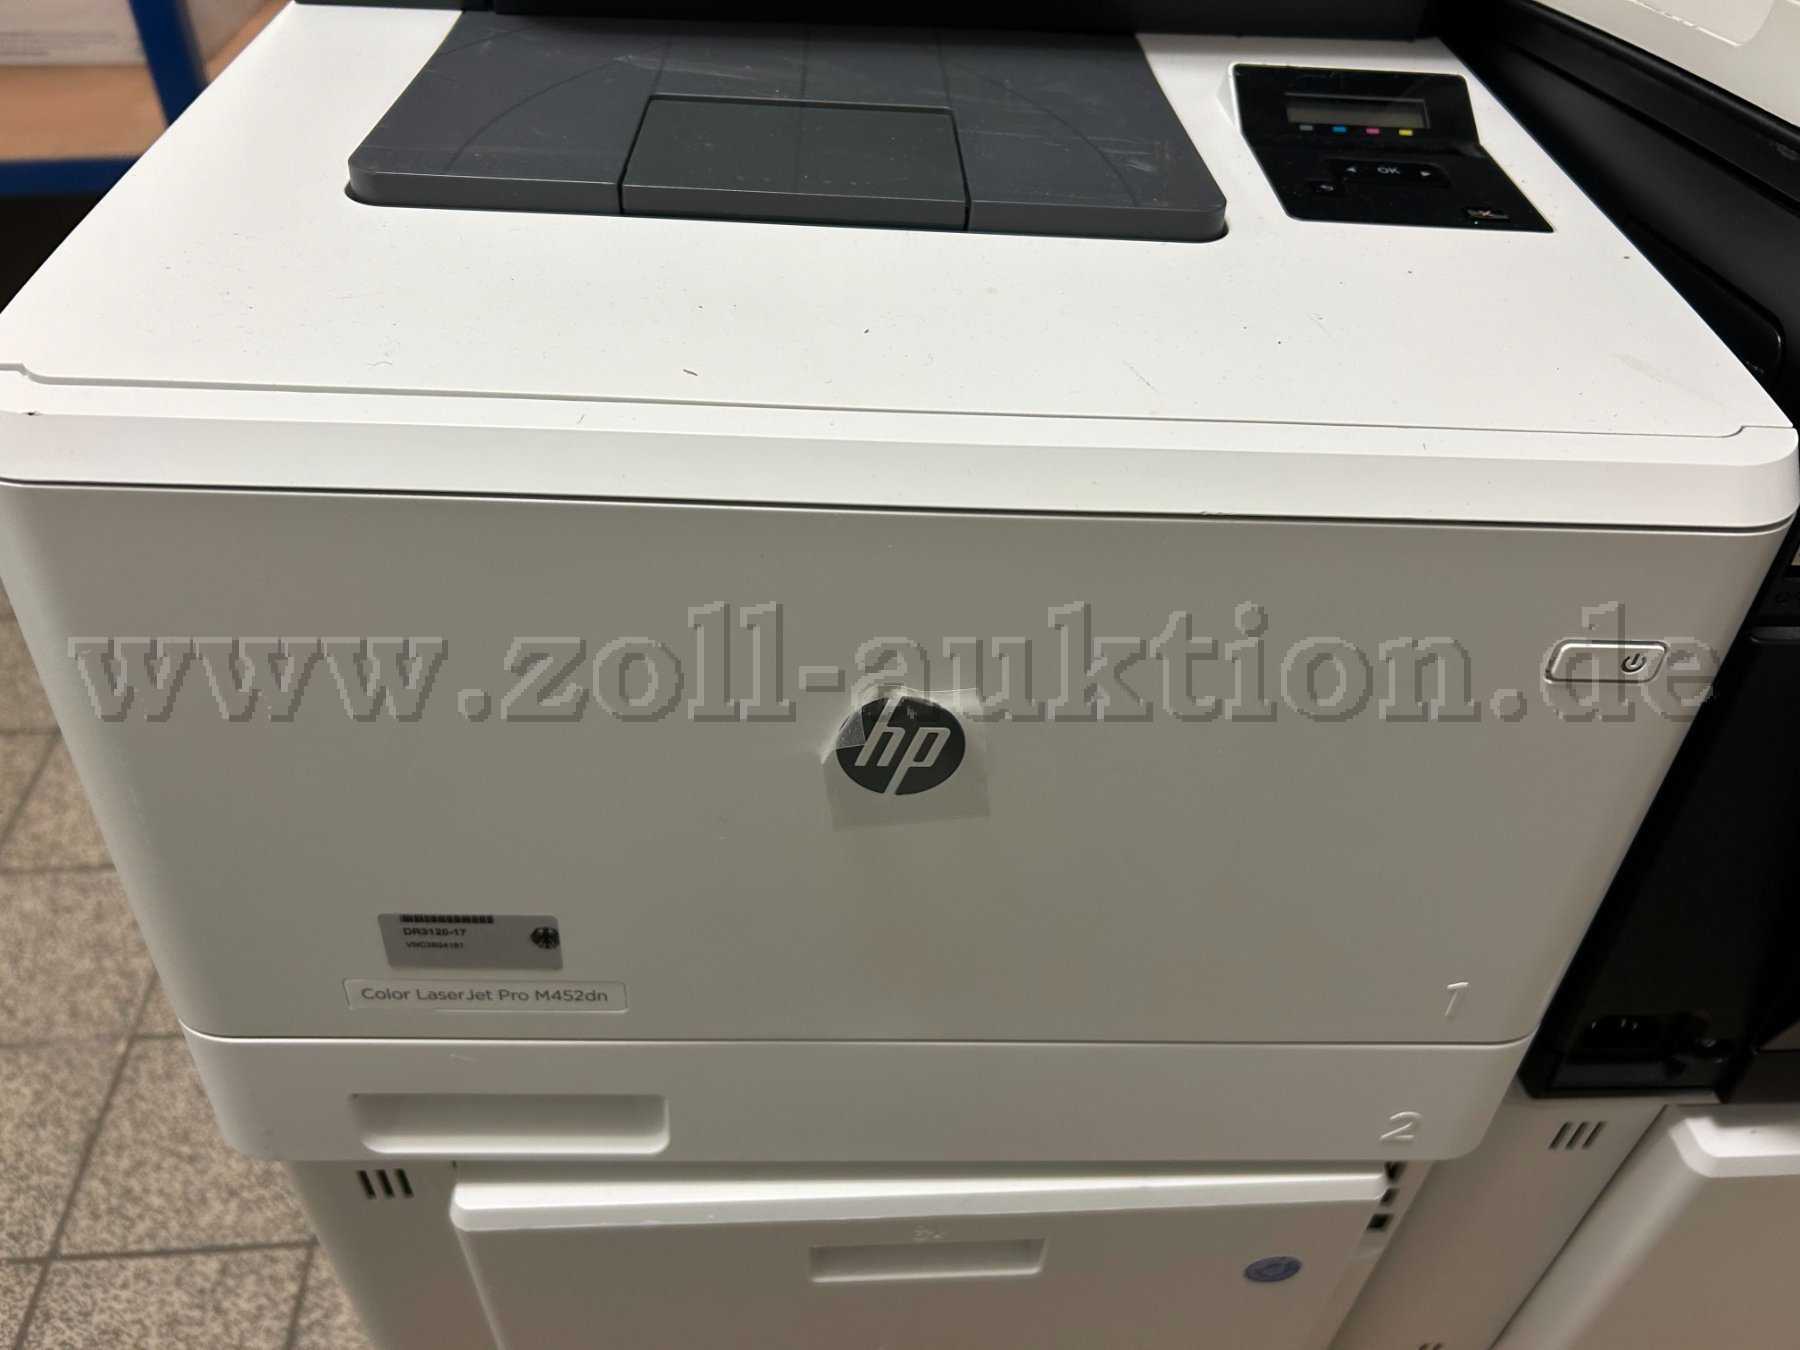 Beispieldarstellung:
HP Laserjet-Pro 452